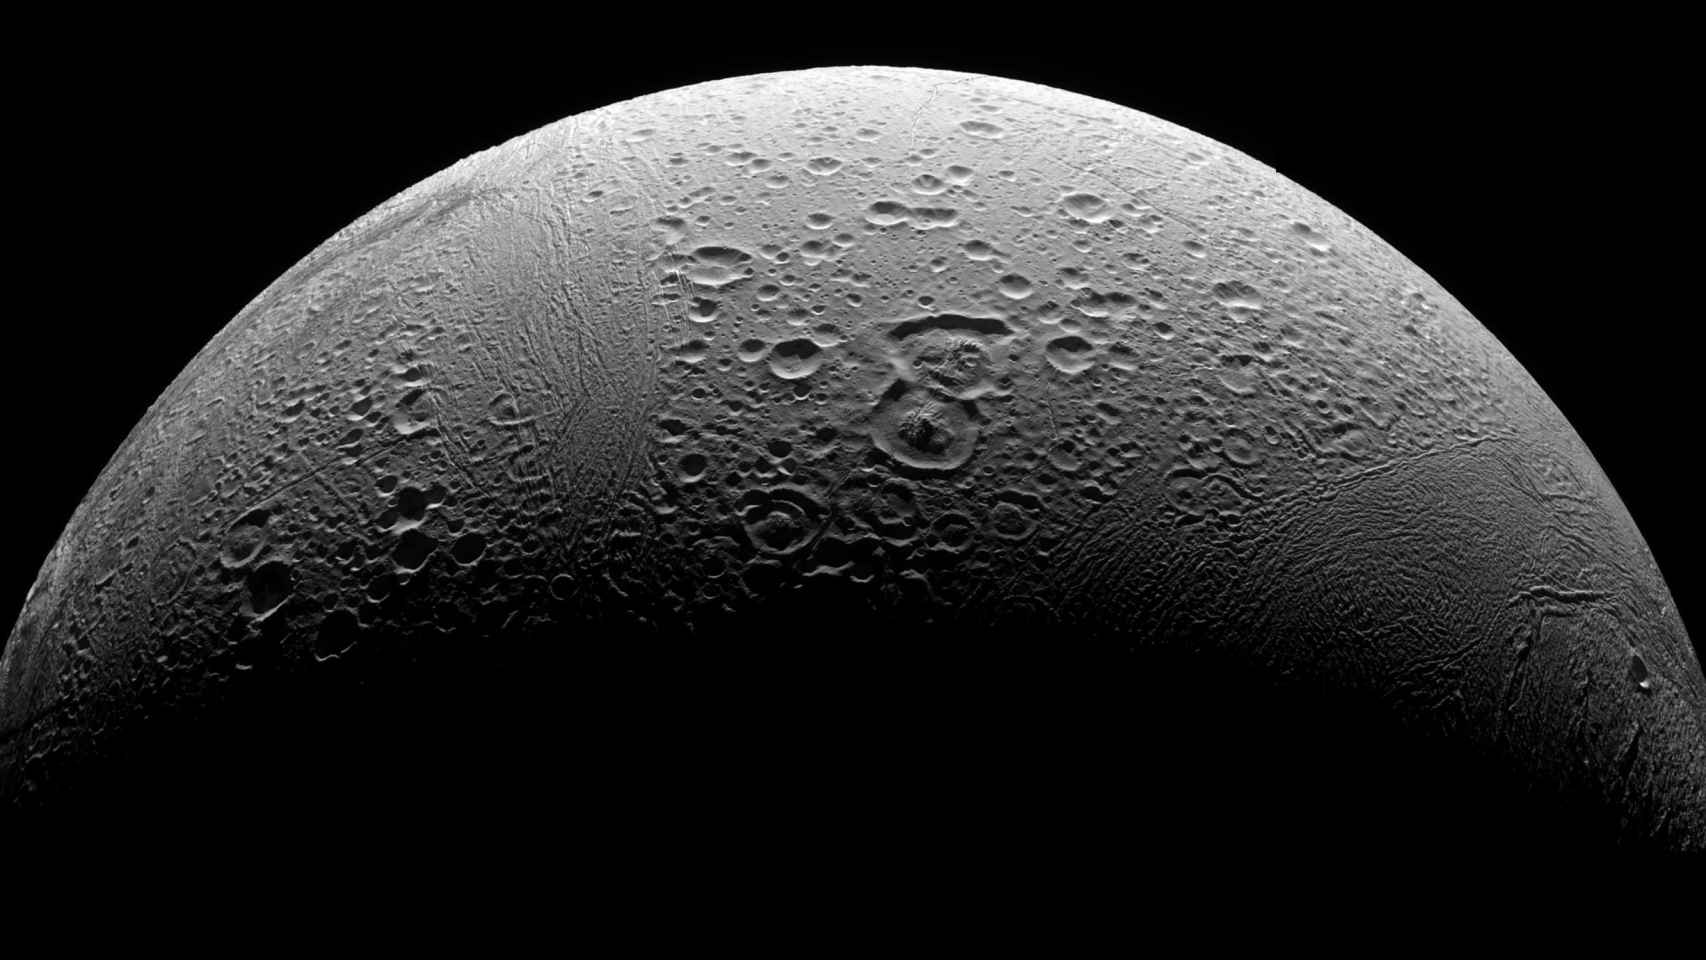 Fotografía de Encélado, la luna de Saturno / CREATIVE COMMONS